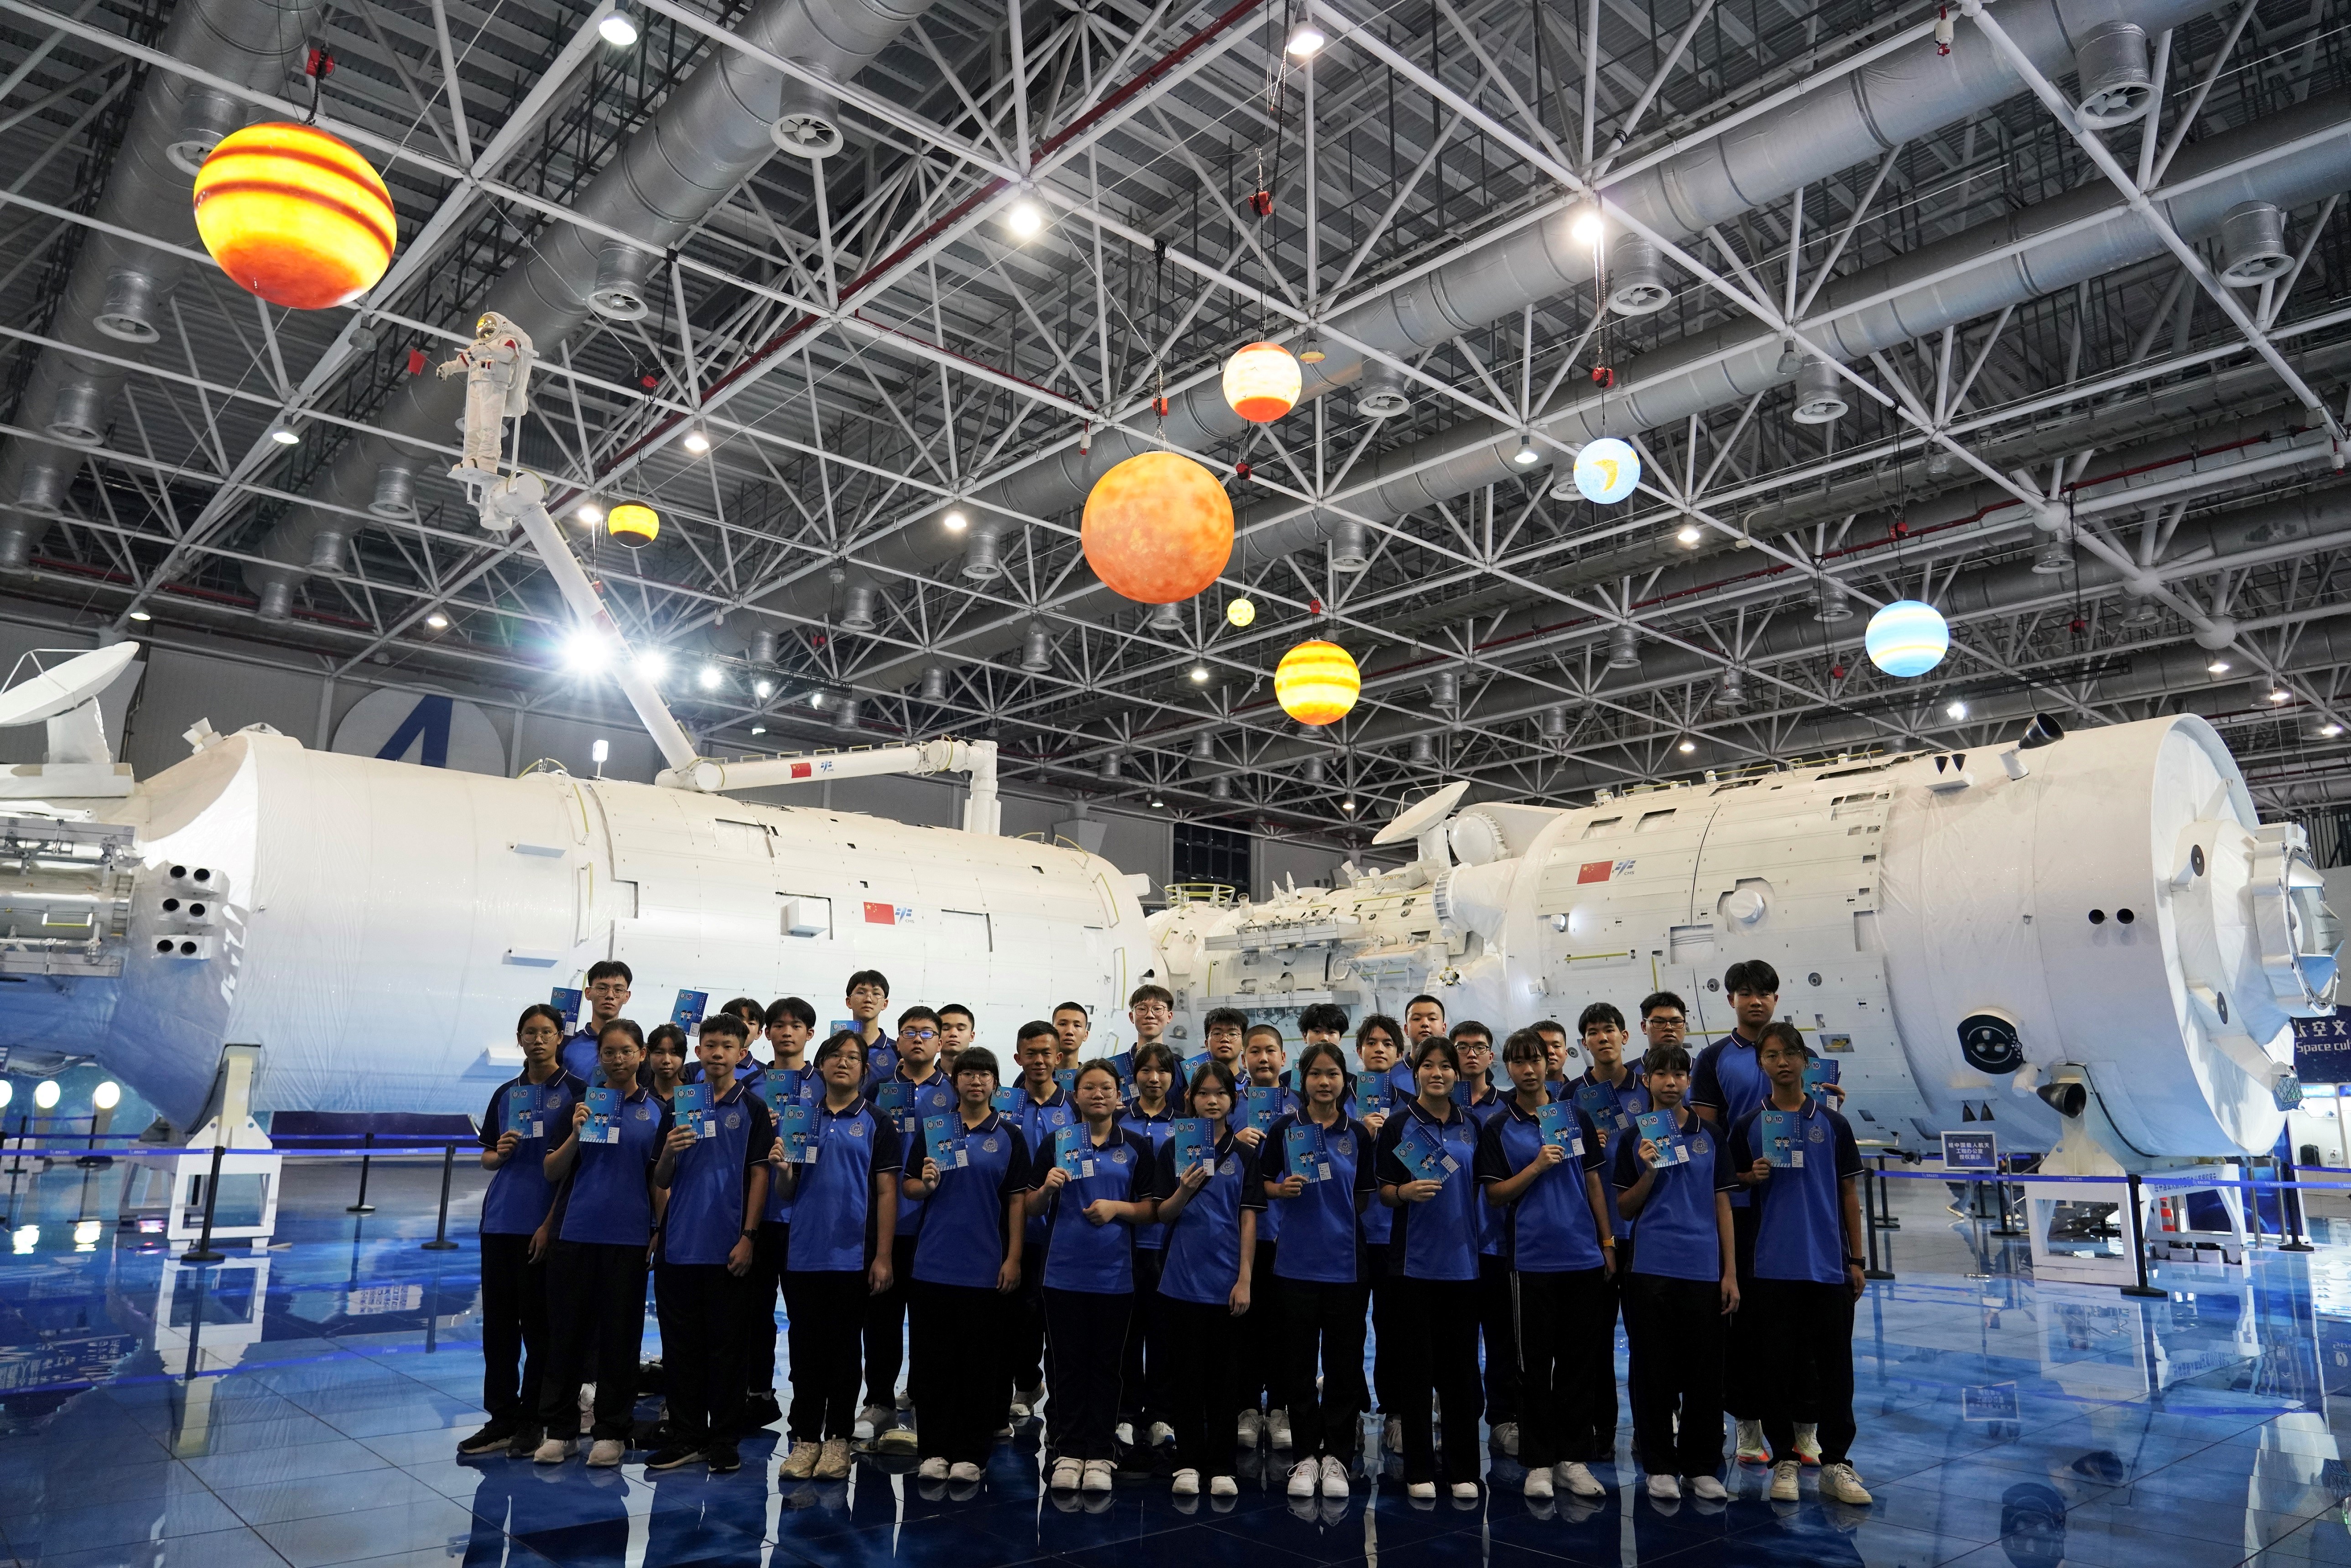 入境事務處青少年領袖團隊員於七月二十六日在珠海太空中心，參觀「天宮」空間站展示艙。